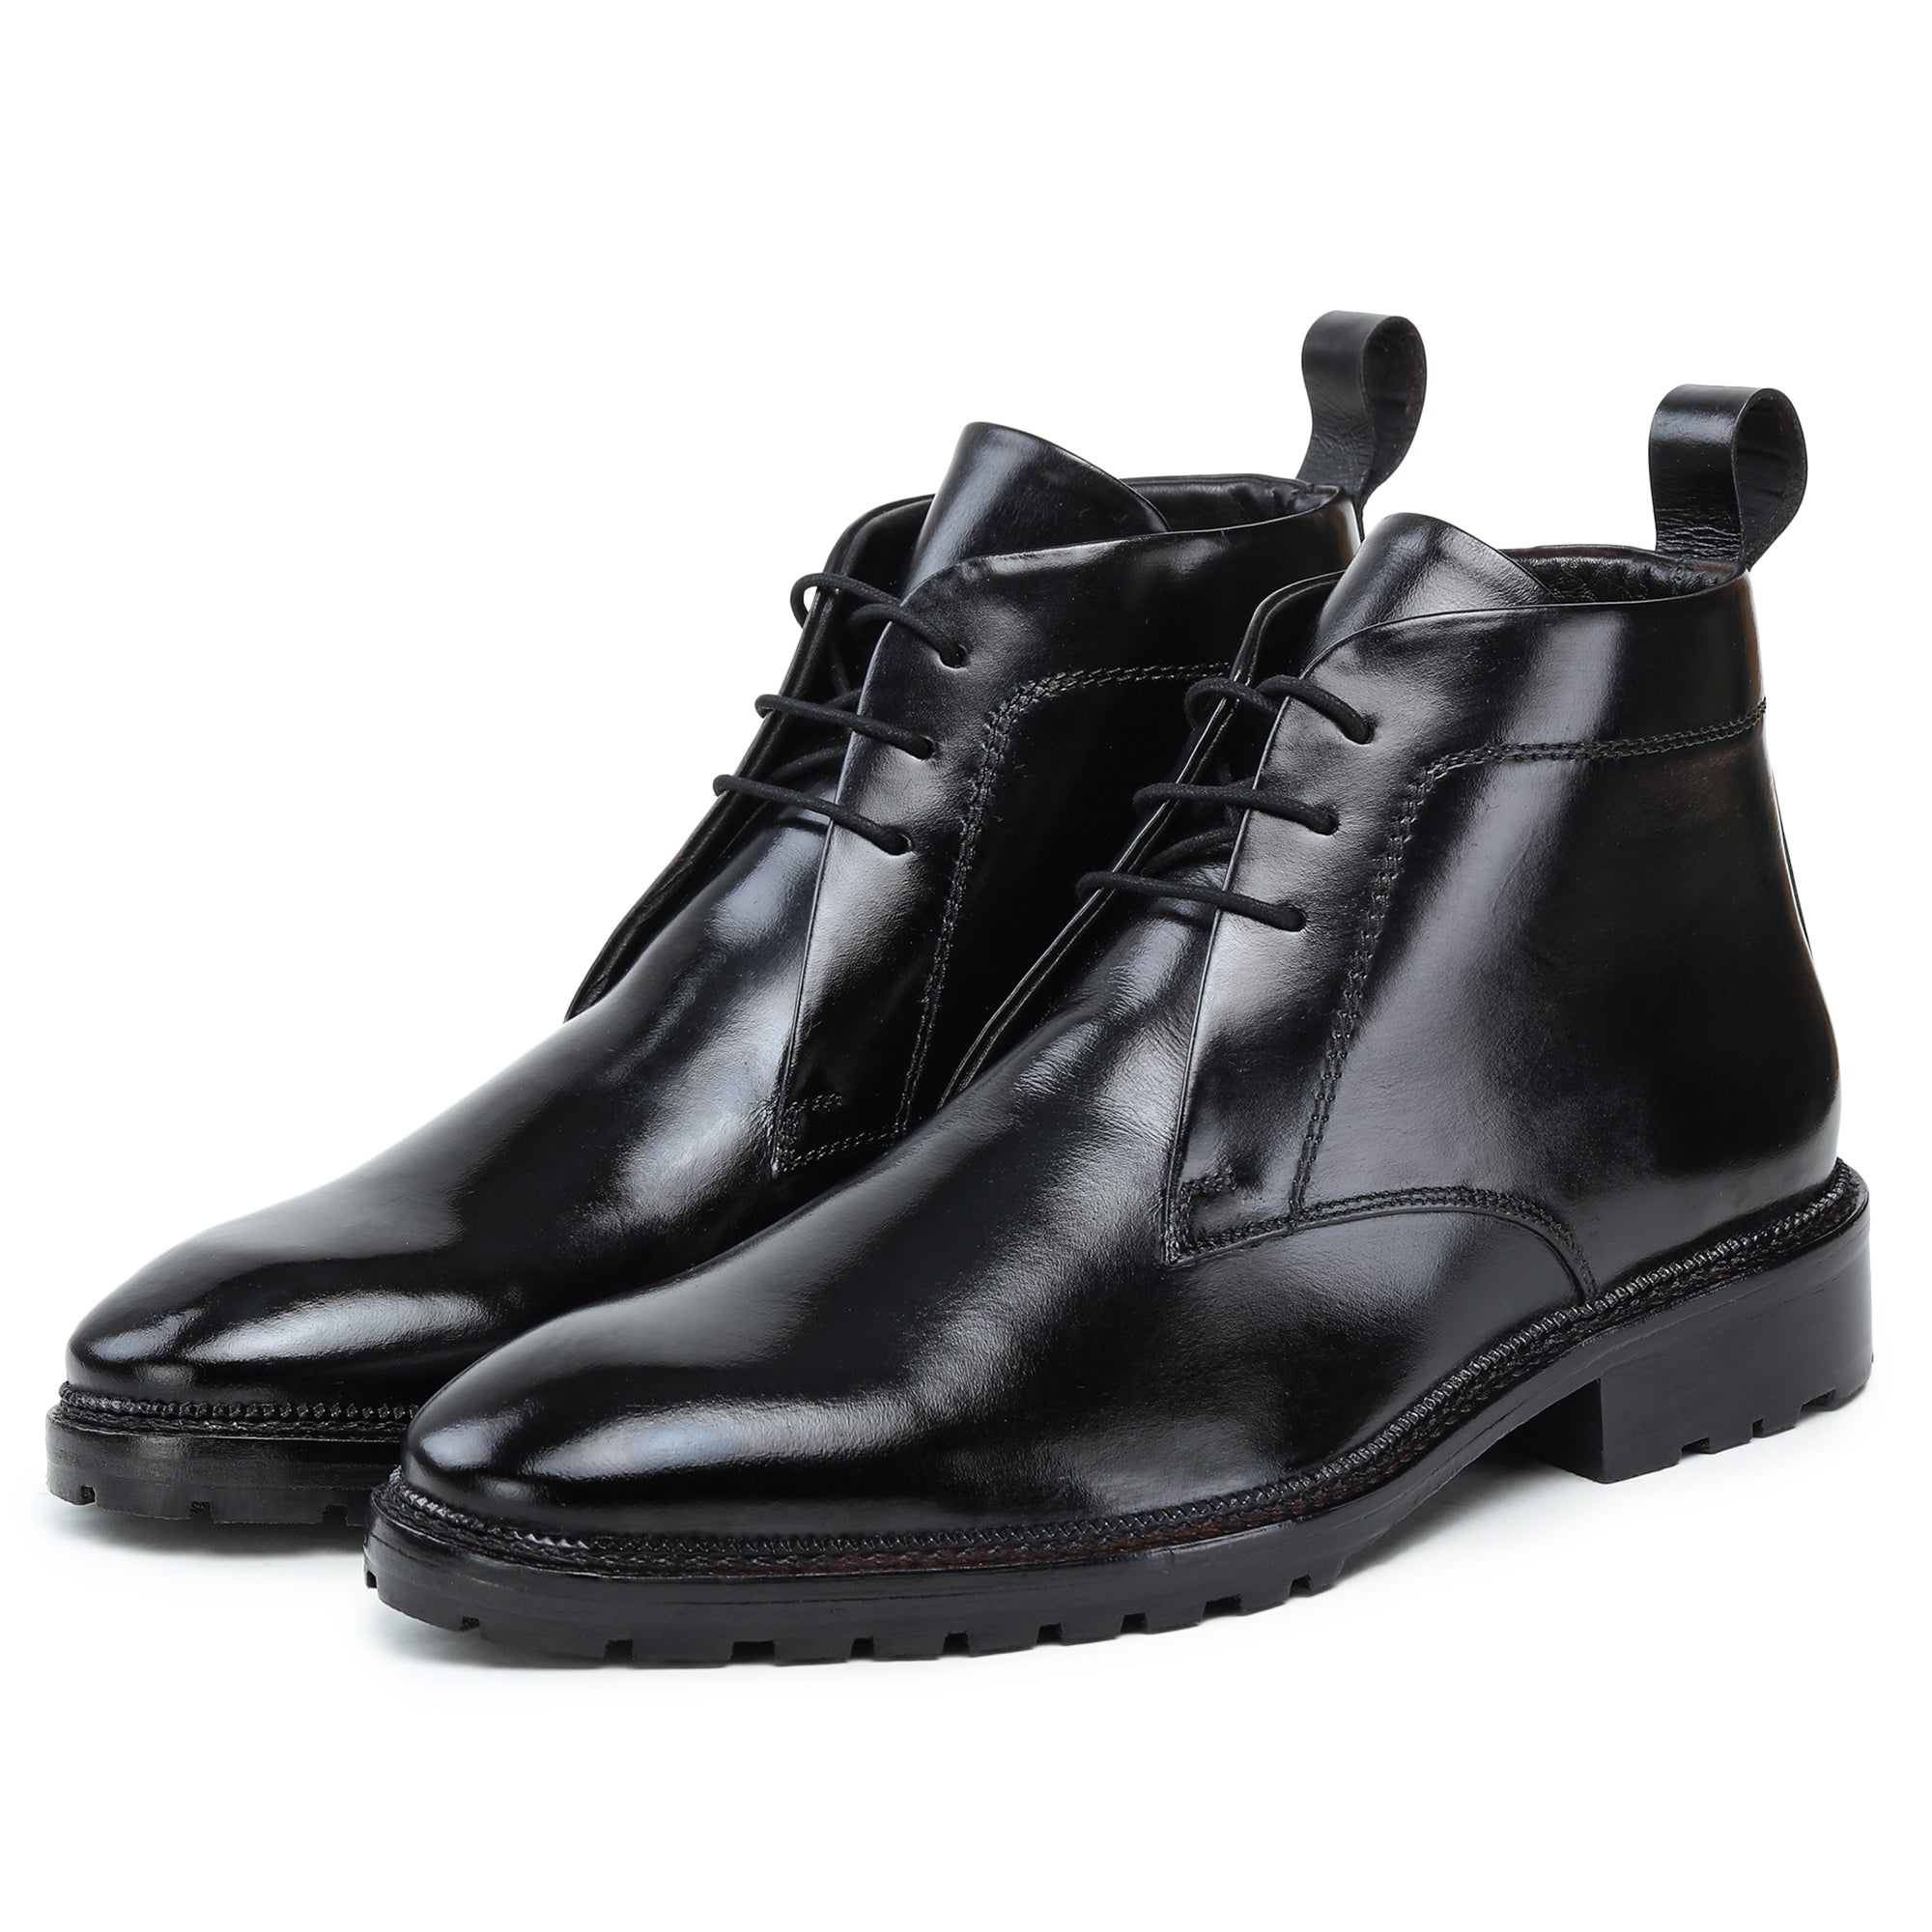 Box-Calf Black Chukka | Shop Now | Stylish Men's Black Chukka Boots Black Box Calf & Dark Red Goodyear Welt - Leather Sole / Zurigo - Rounded Toe for